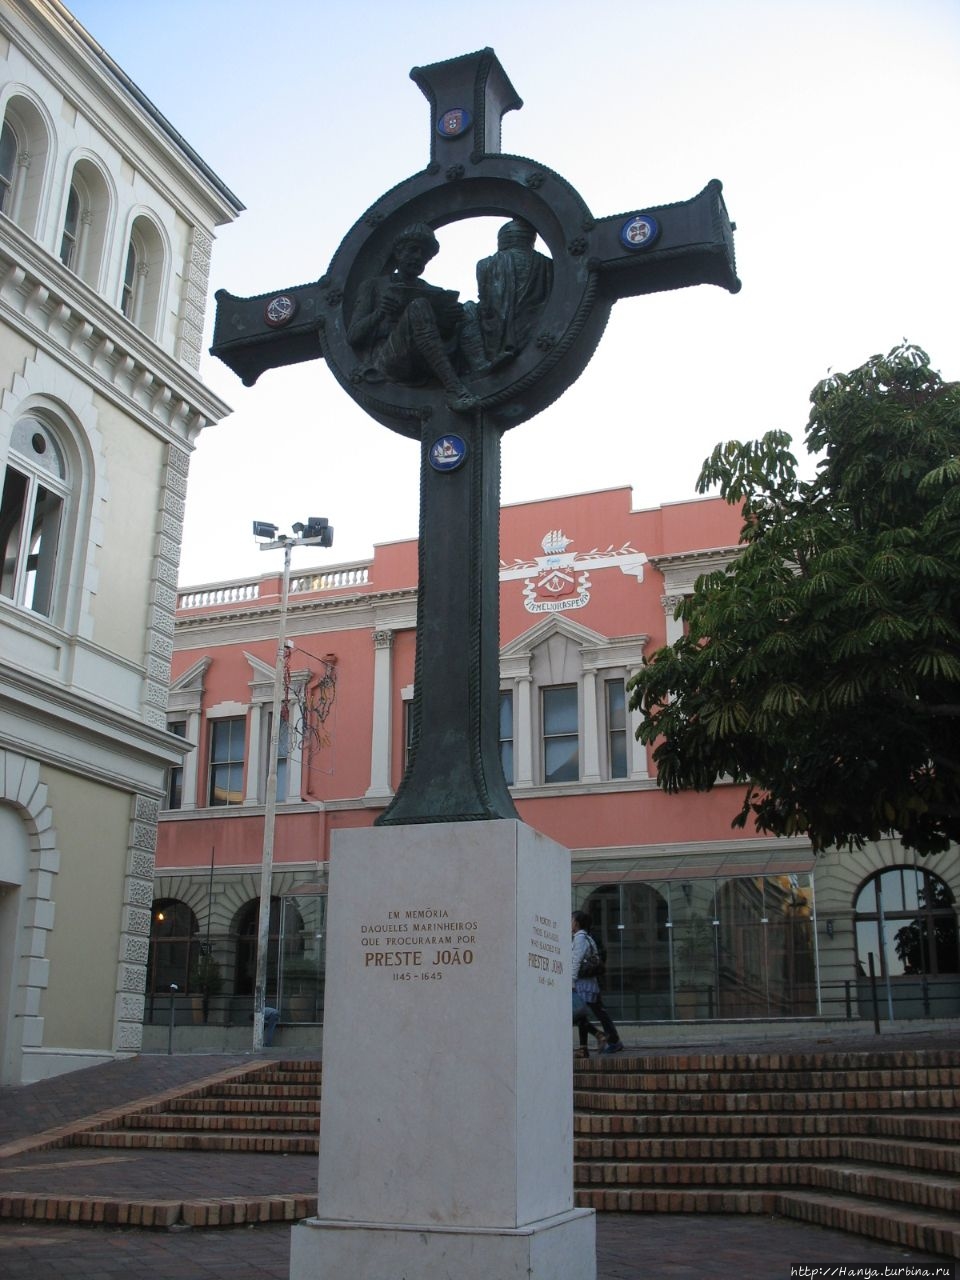 Здание Старой почты и крест Престера Джона Порт-Элизабет, ЮАР